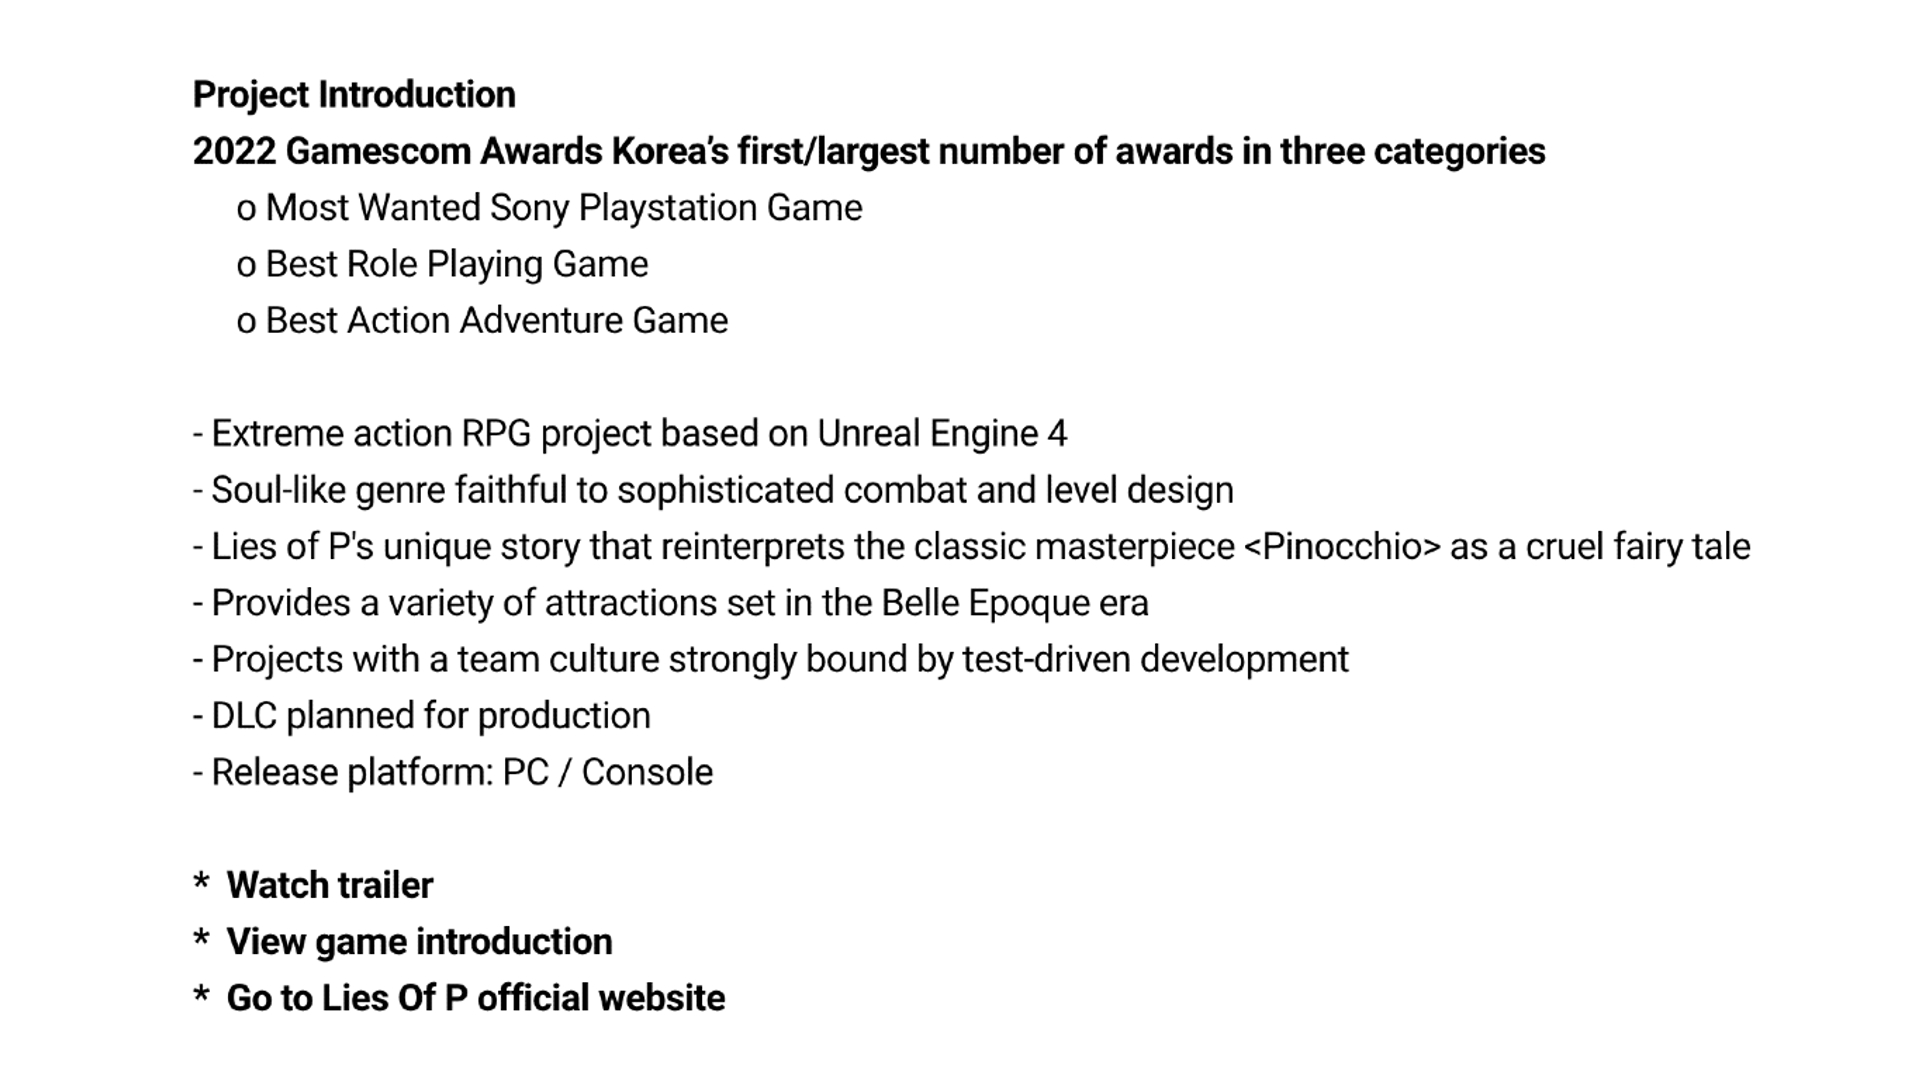 Stellenanzeige von Neowiz Games mit Einzelheiten zum geplanten Lies of P DLC